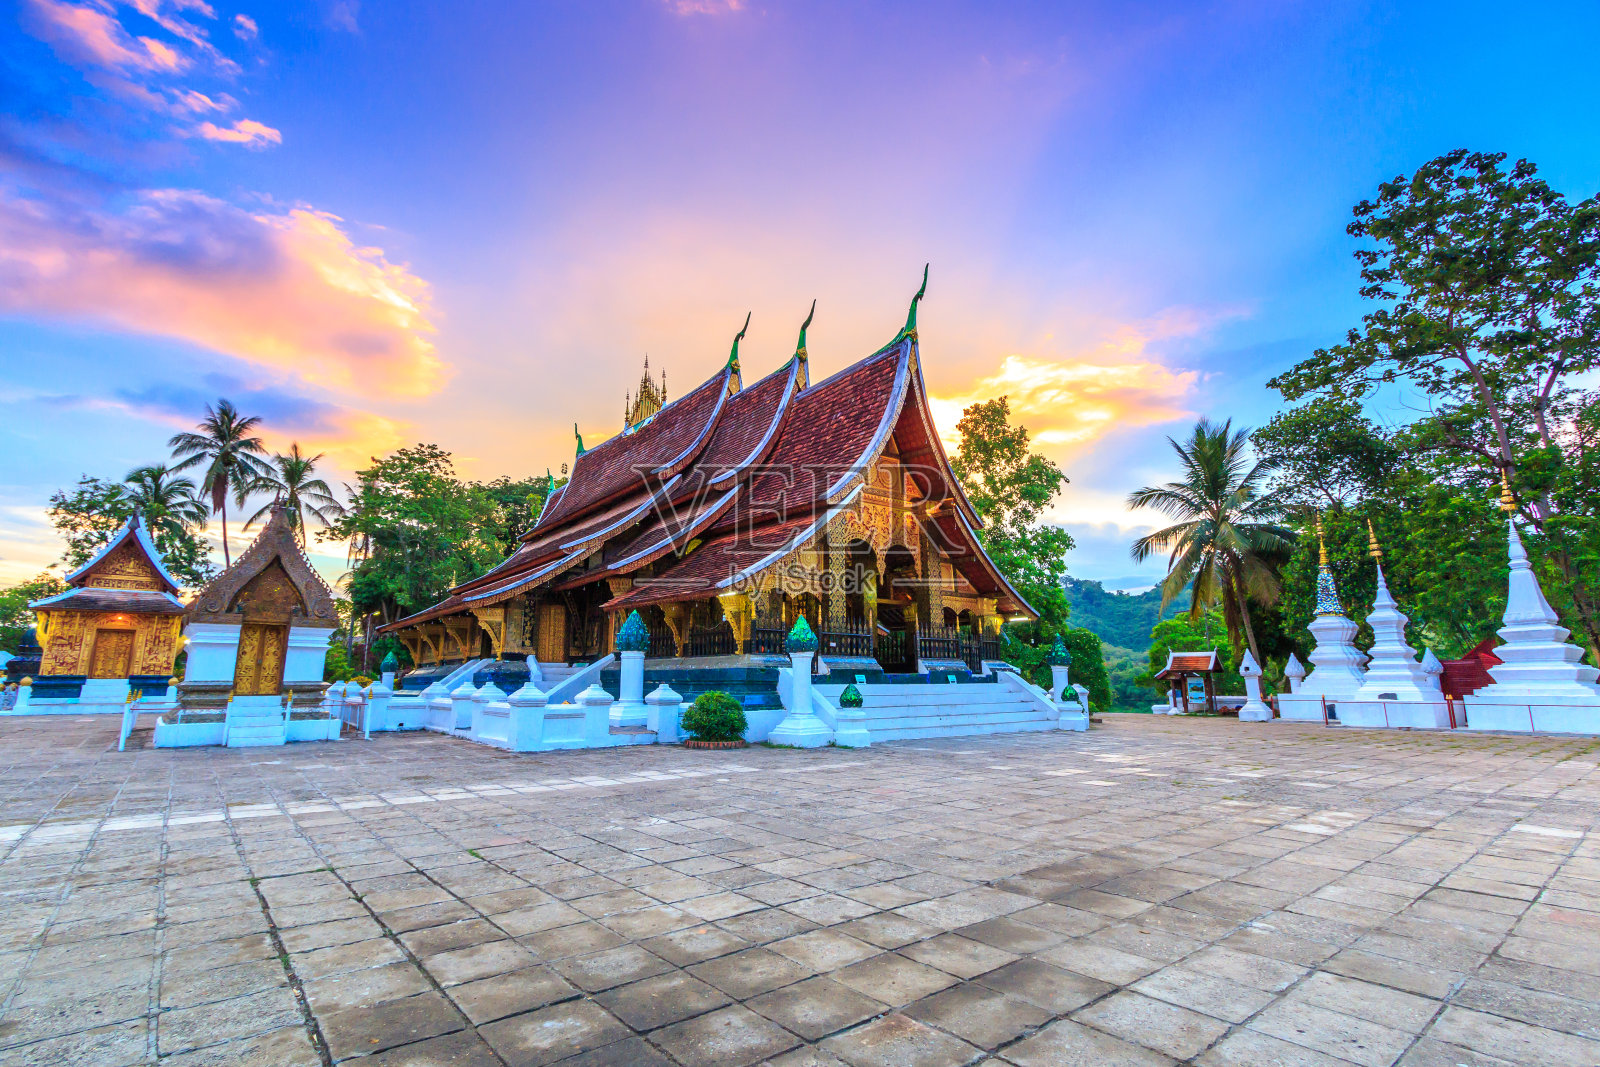 老挝琅勃拉邦的金城寺。湘通寺是老挝最重要的寺院之一。照片摄影图片